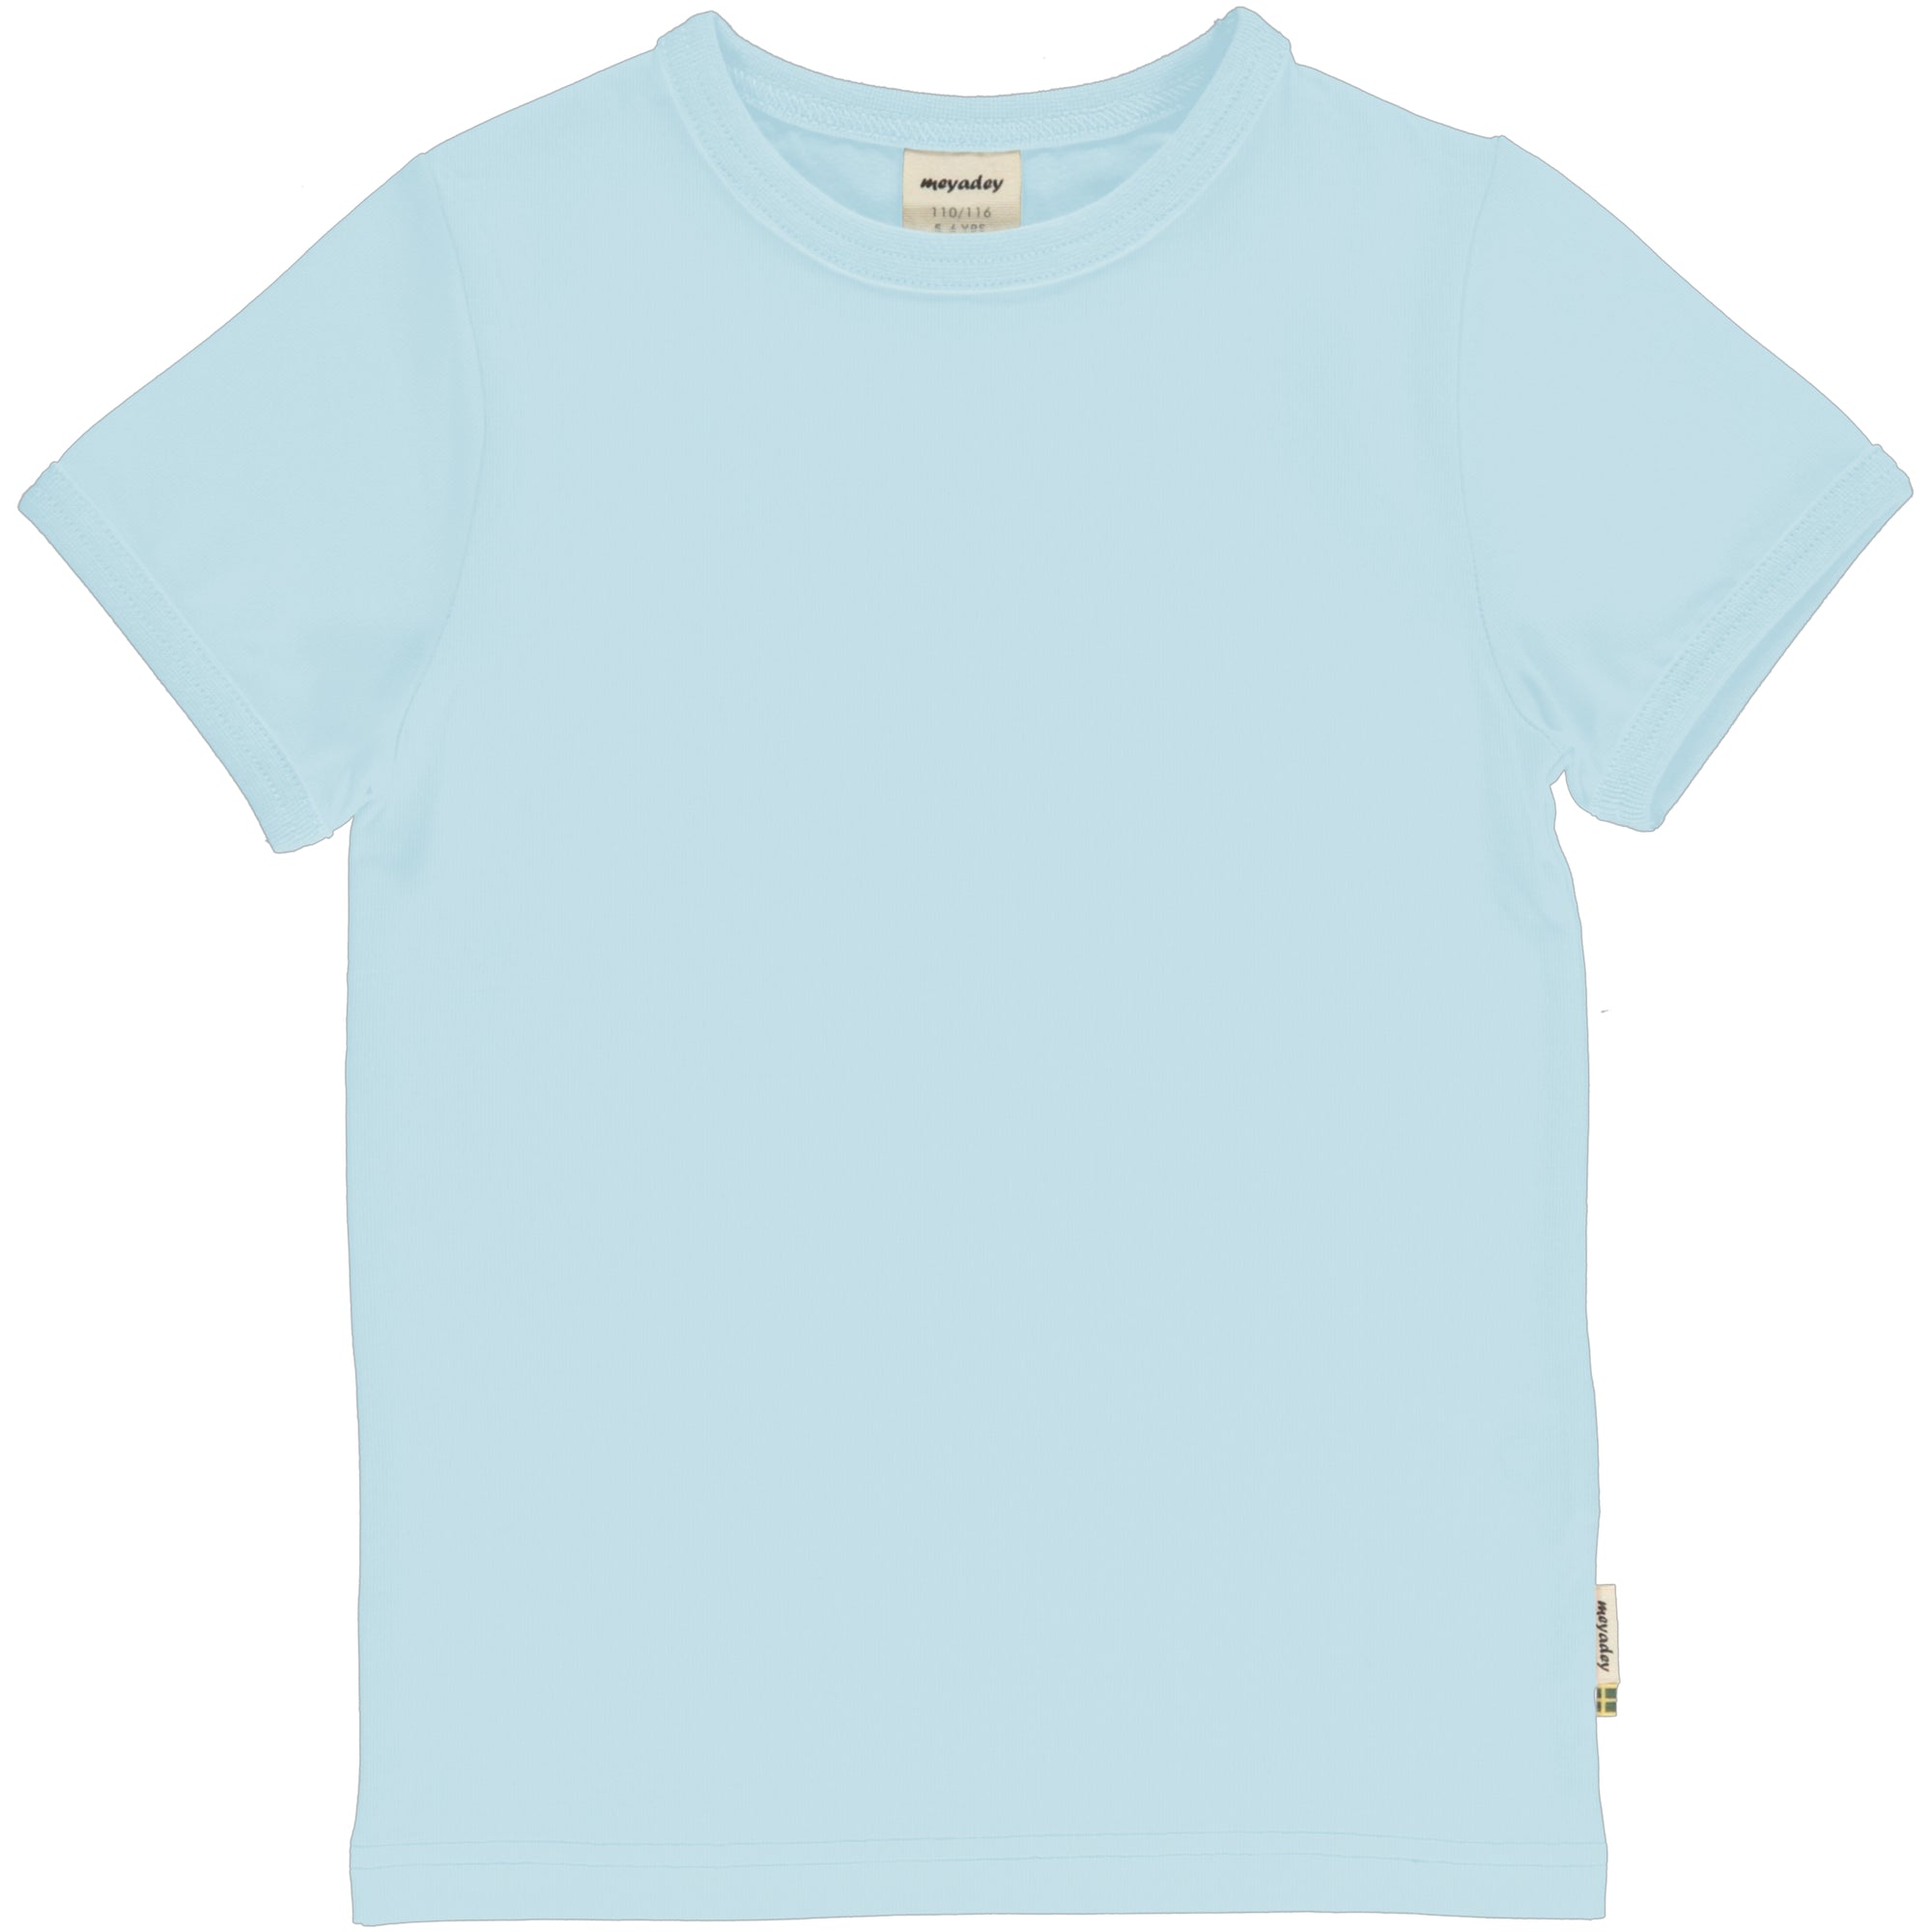 Meyadey - Top SS Solid Blue Soft T-Shirt Zacht Blauw